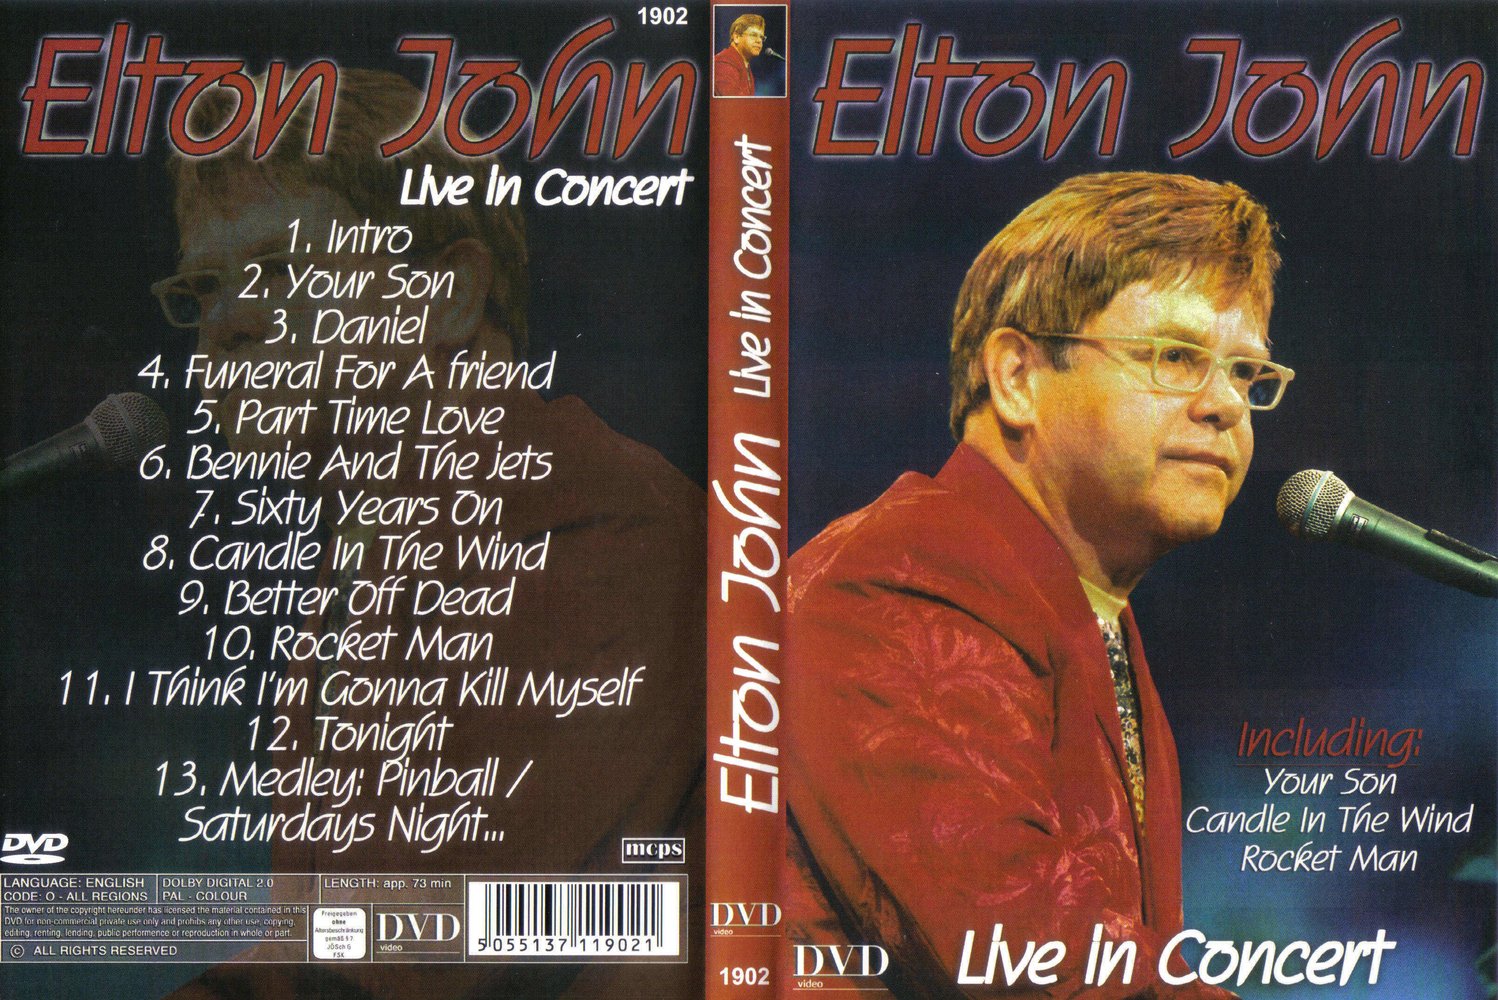 Jaquette DVD Elton John Live in concert